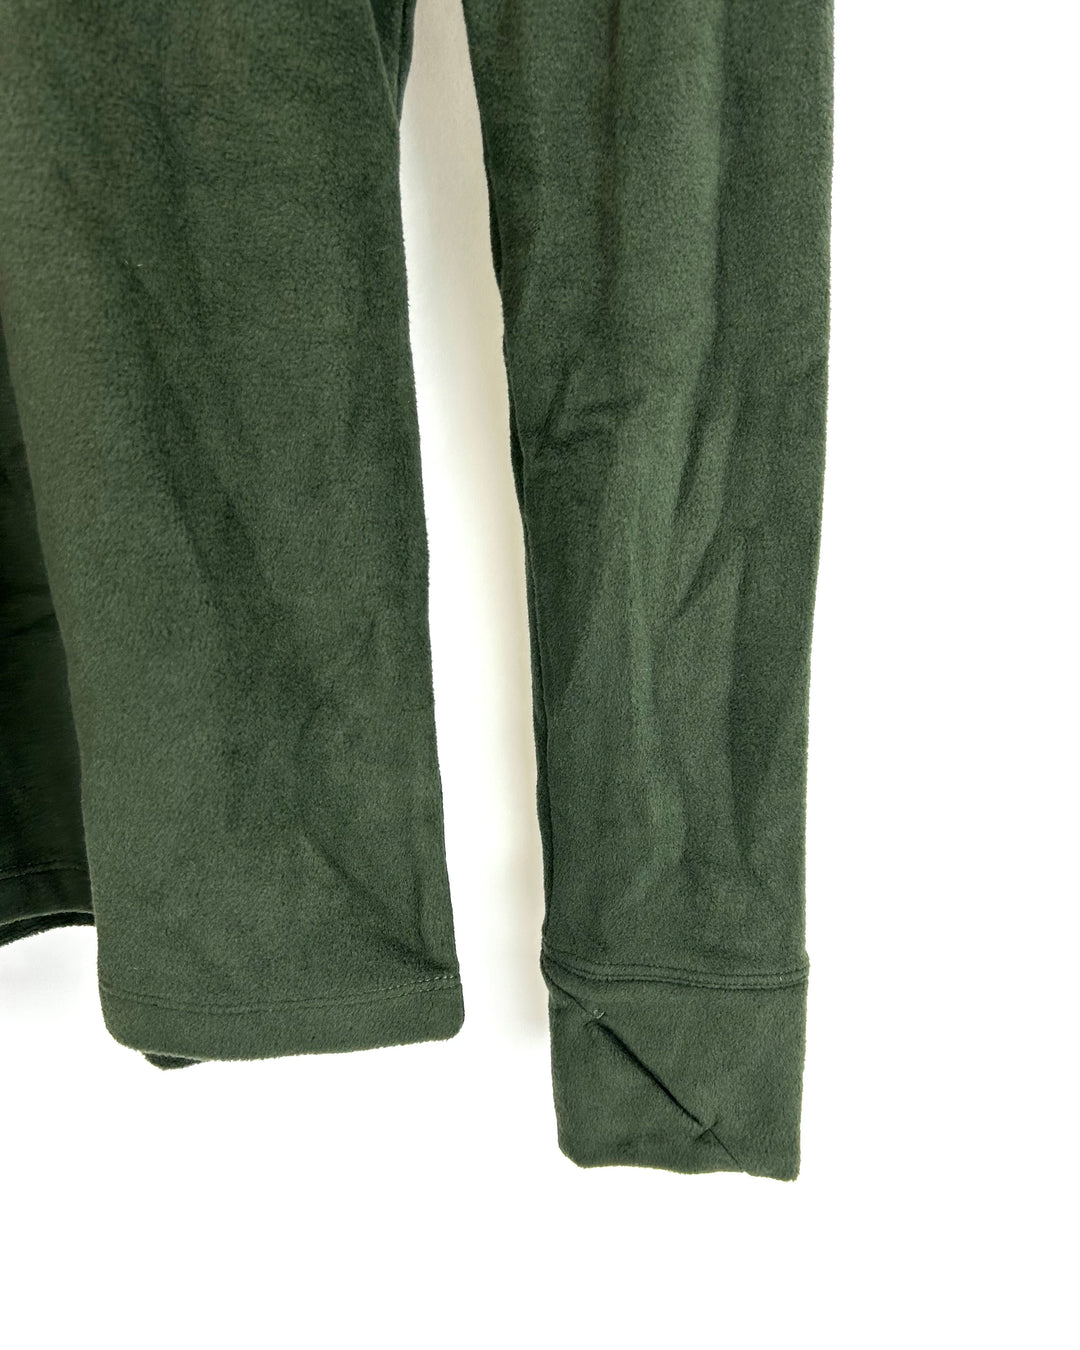 Green Fleece Quarter Zip Top - Size 2/4